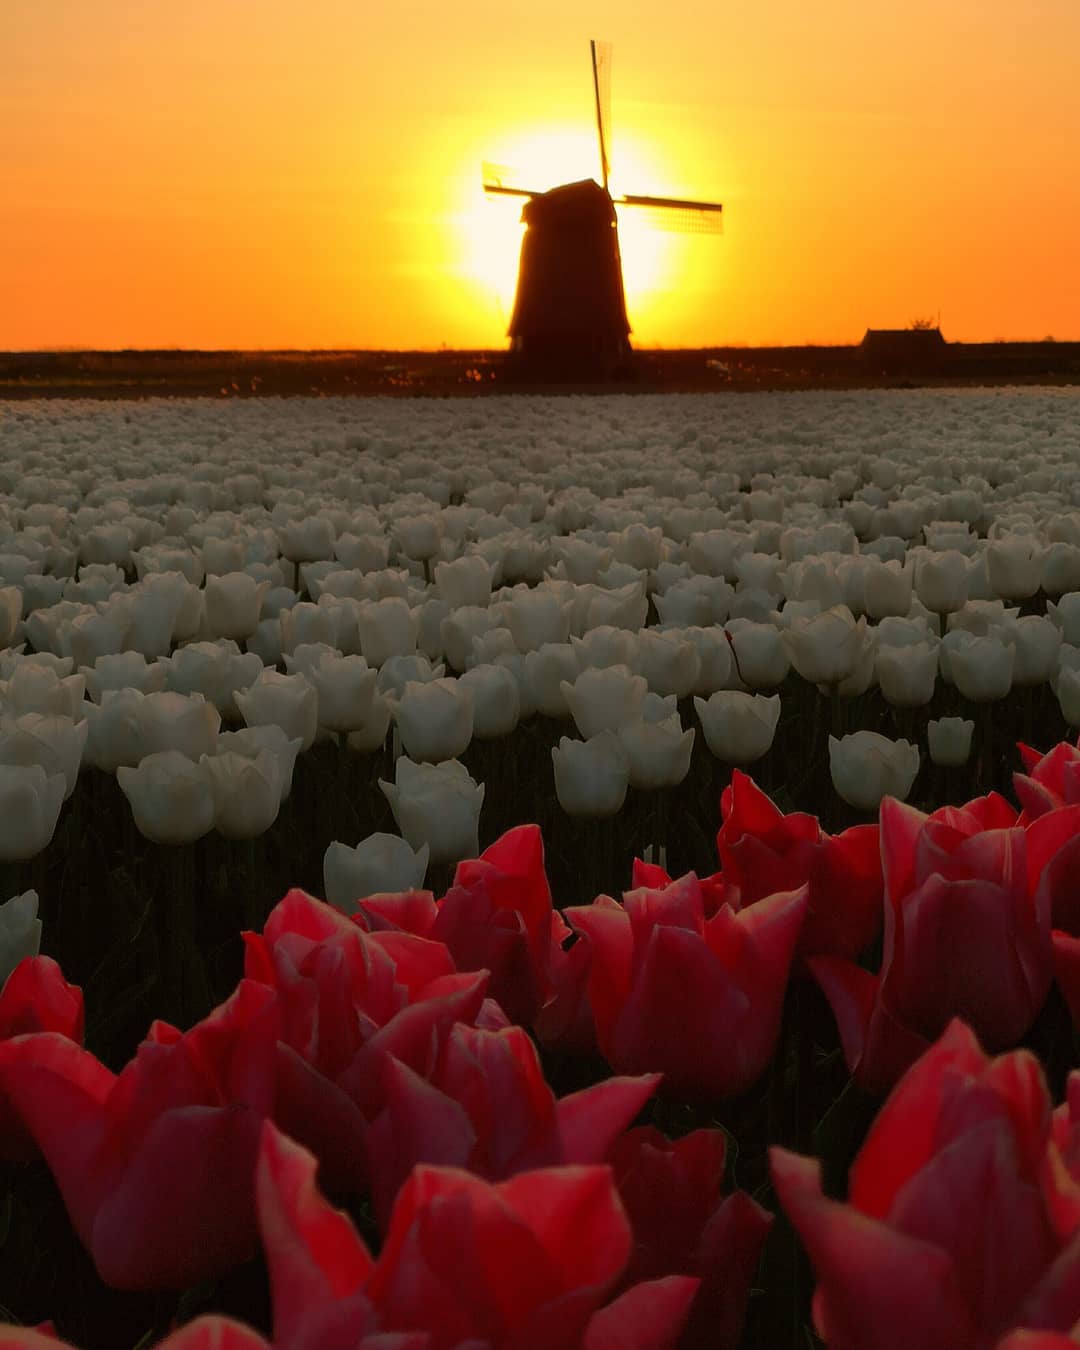 Красота тюльпанов на снимках Дирка Яна Пирсма